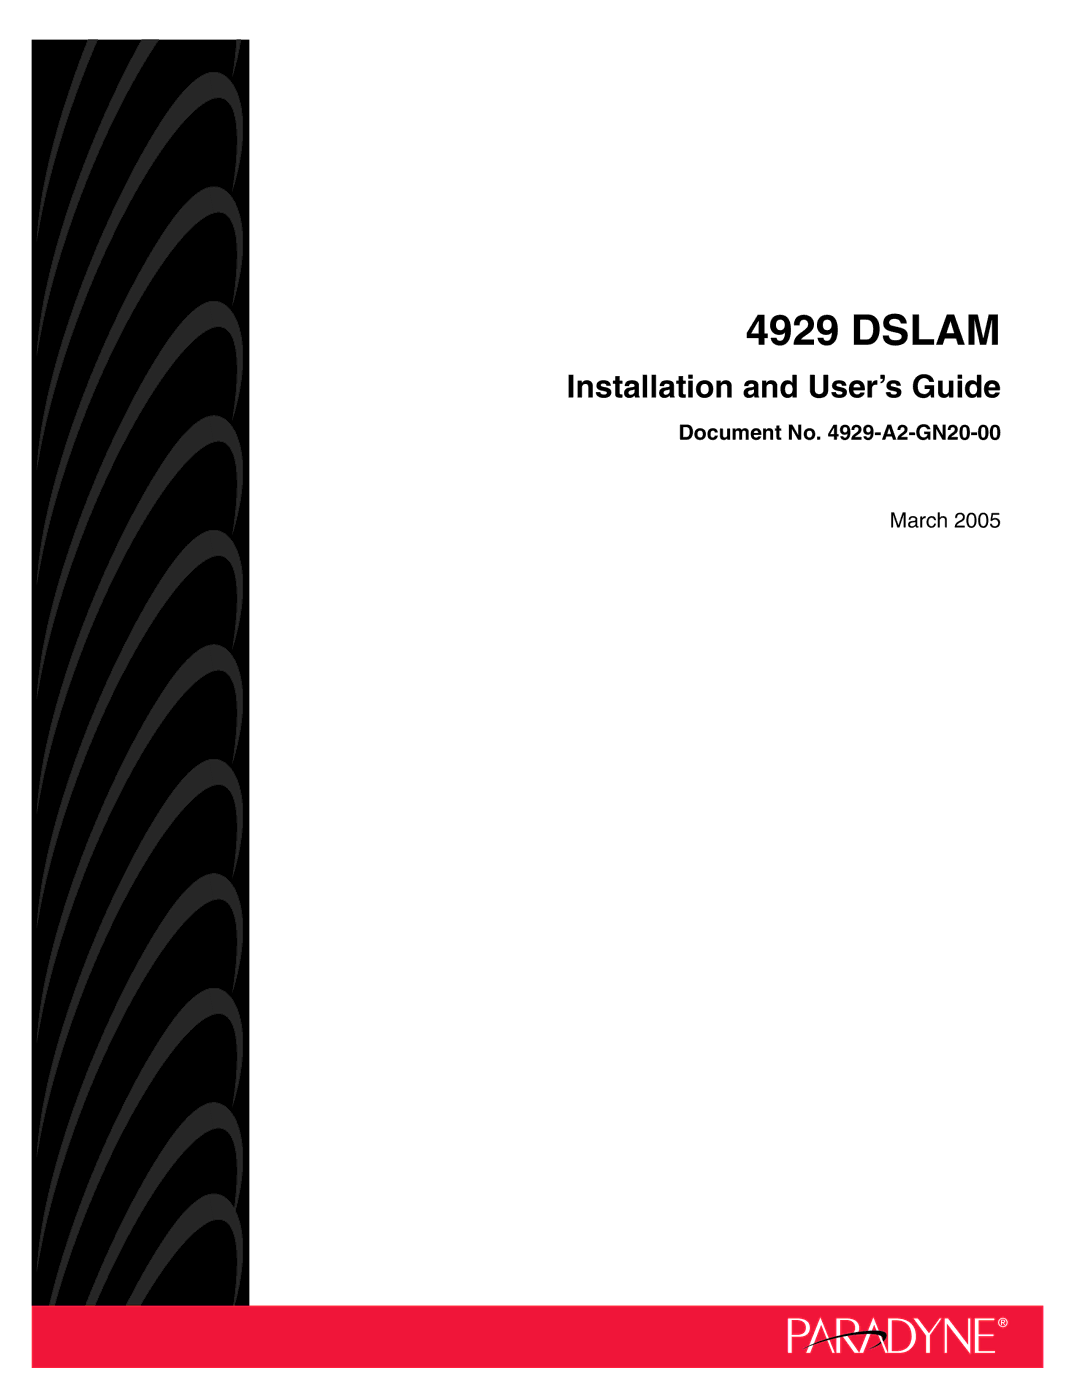 Paradyne 4929 DSLAM manual Dslam 